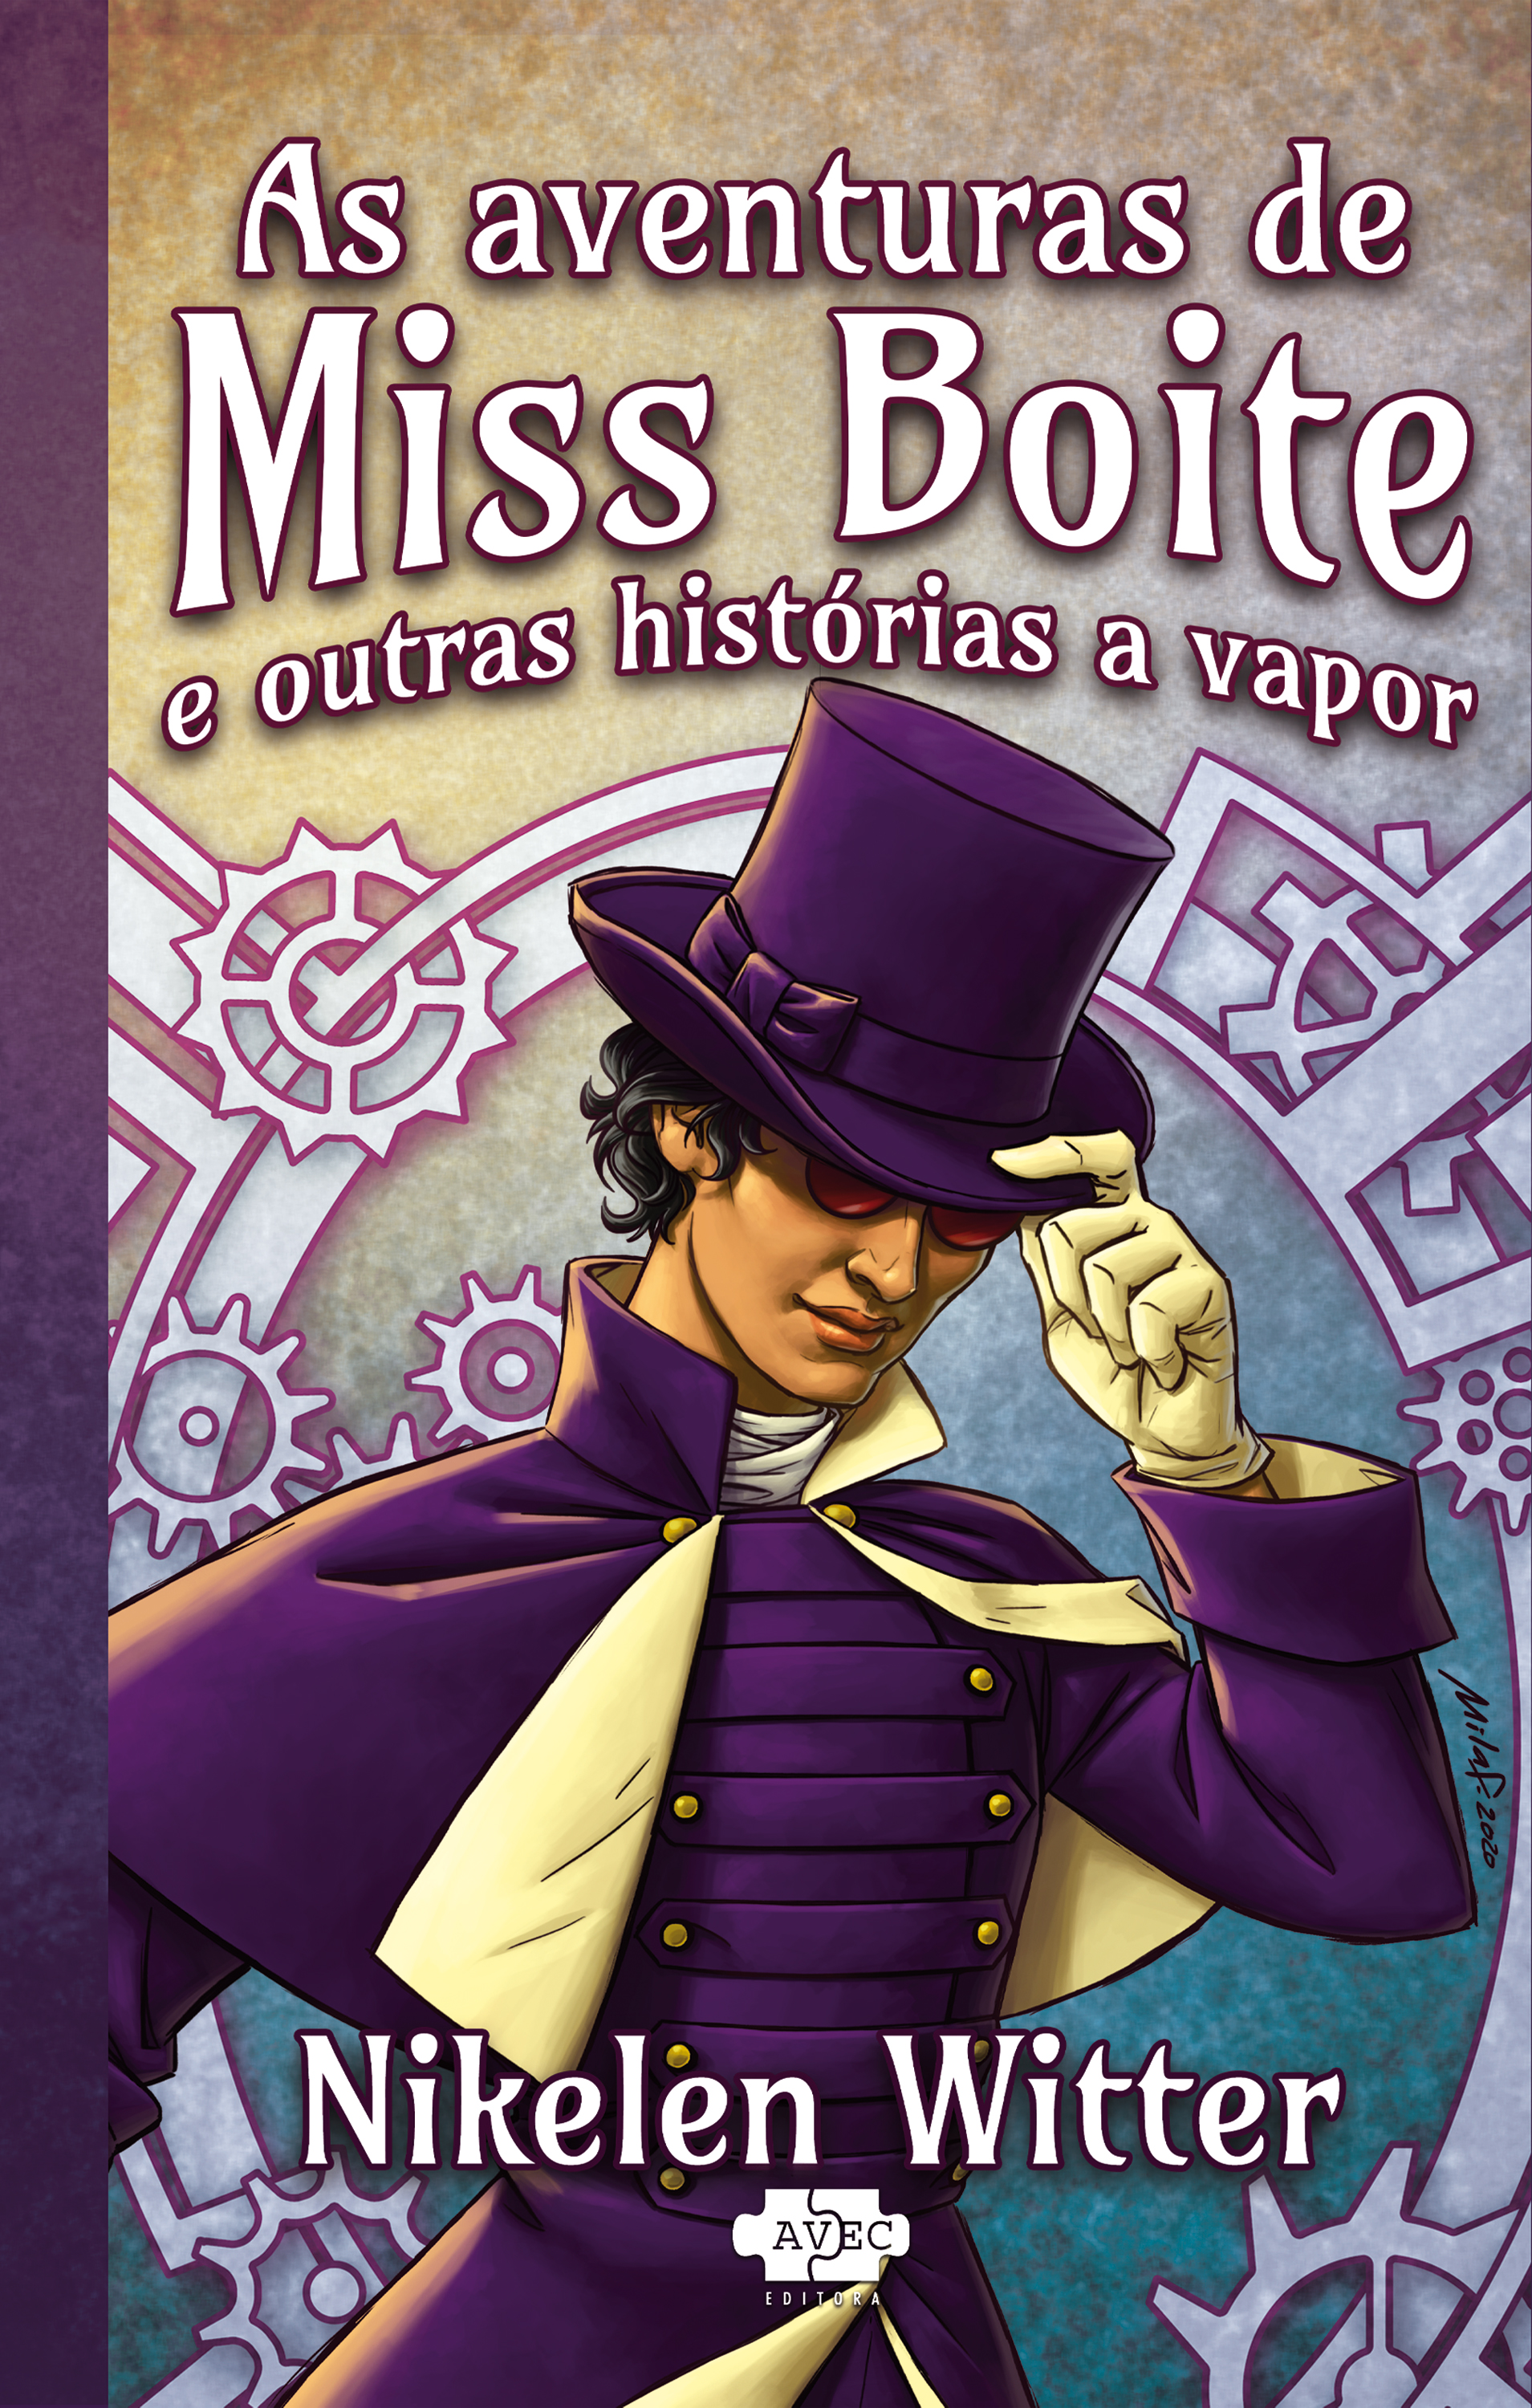 As aventuras de Miss Boite e outras historias a vapor